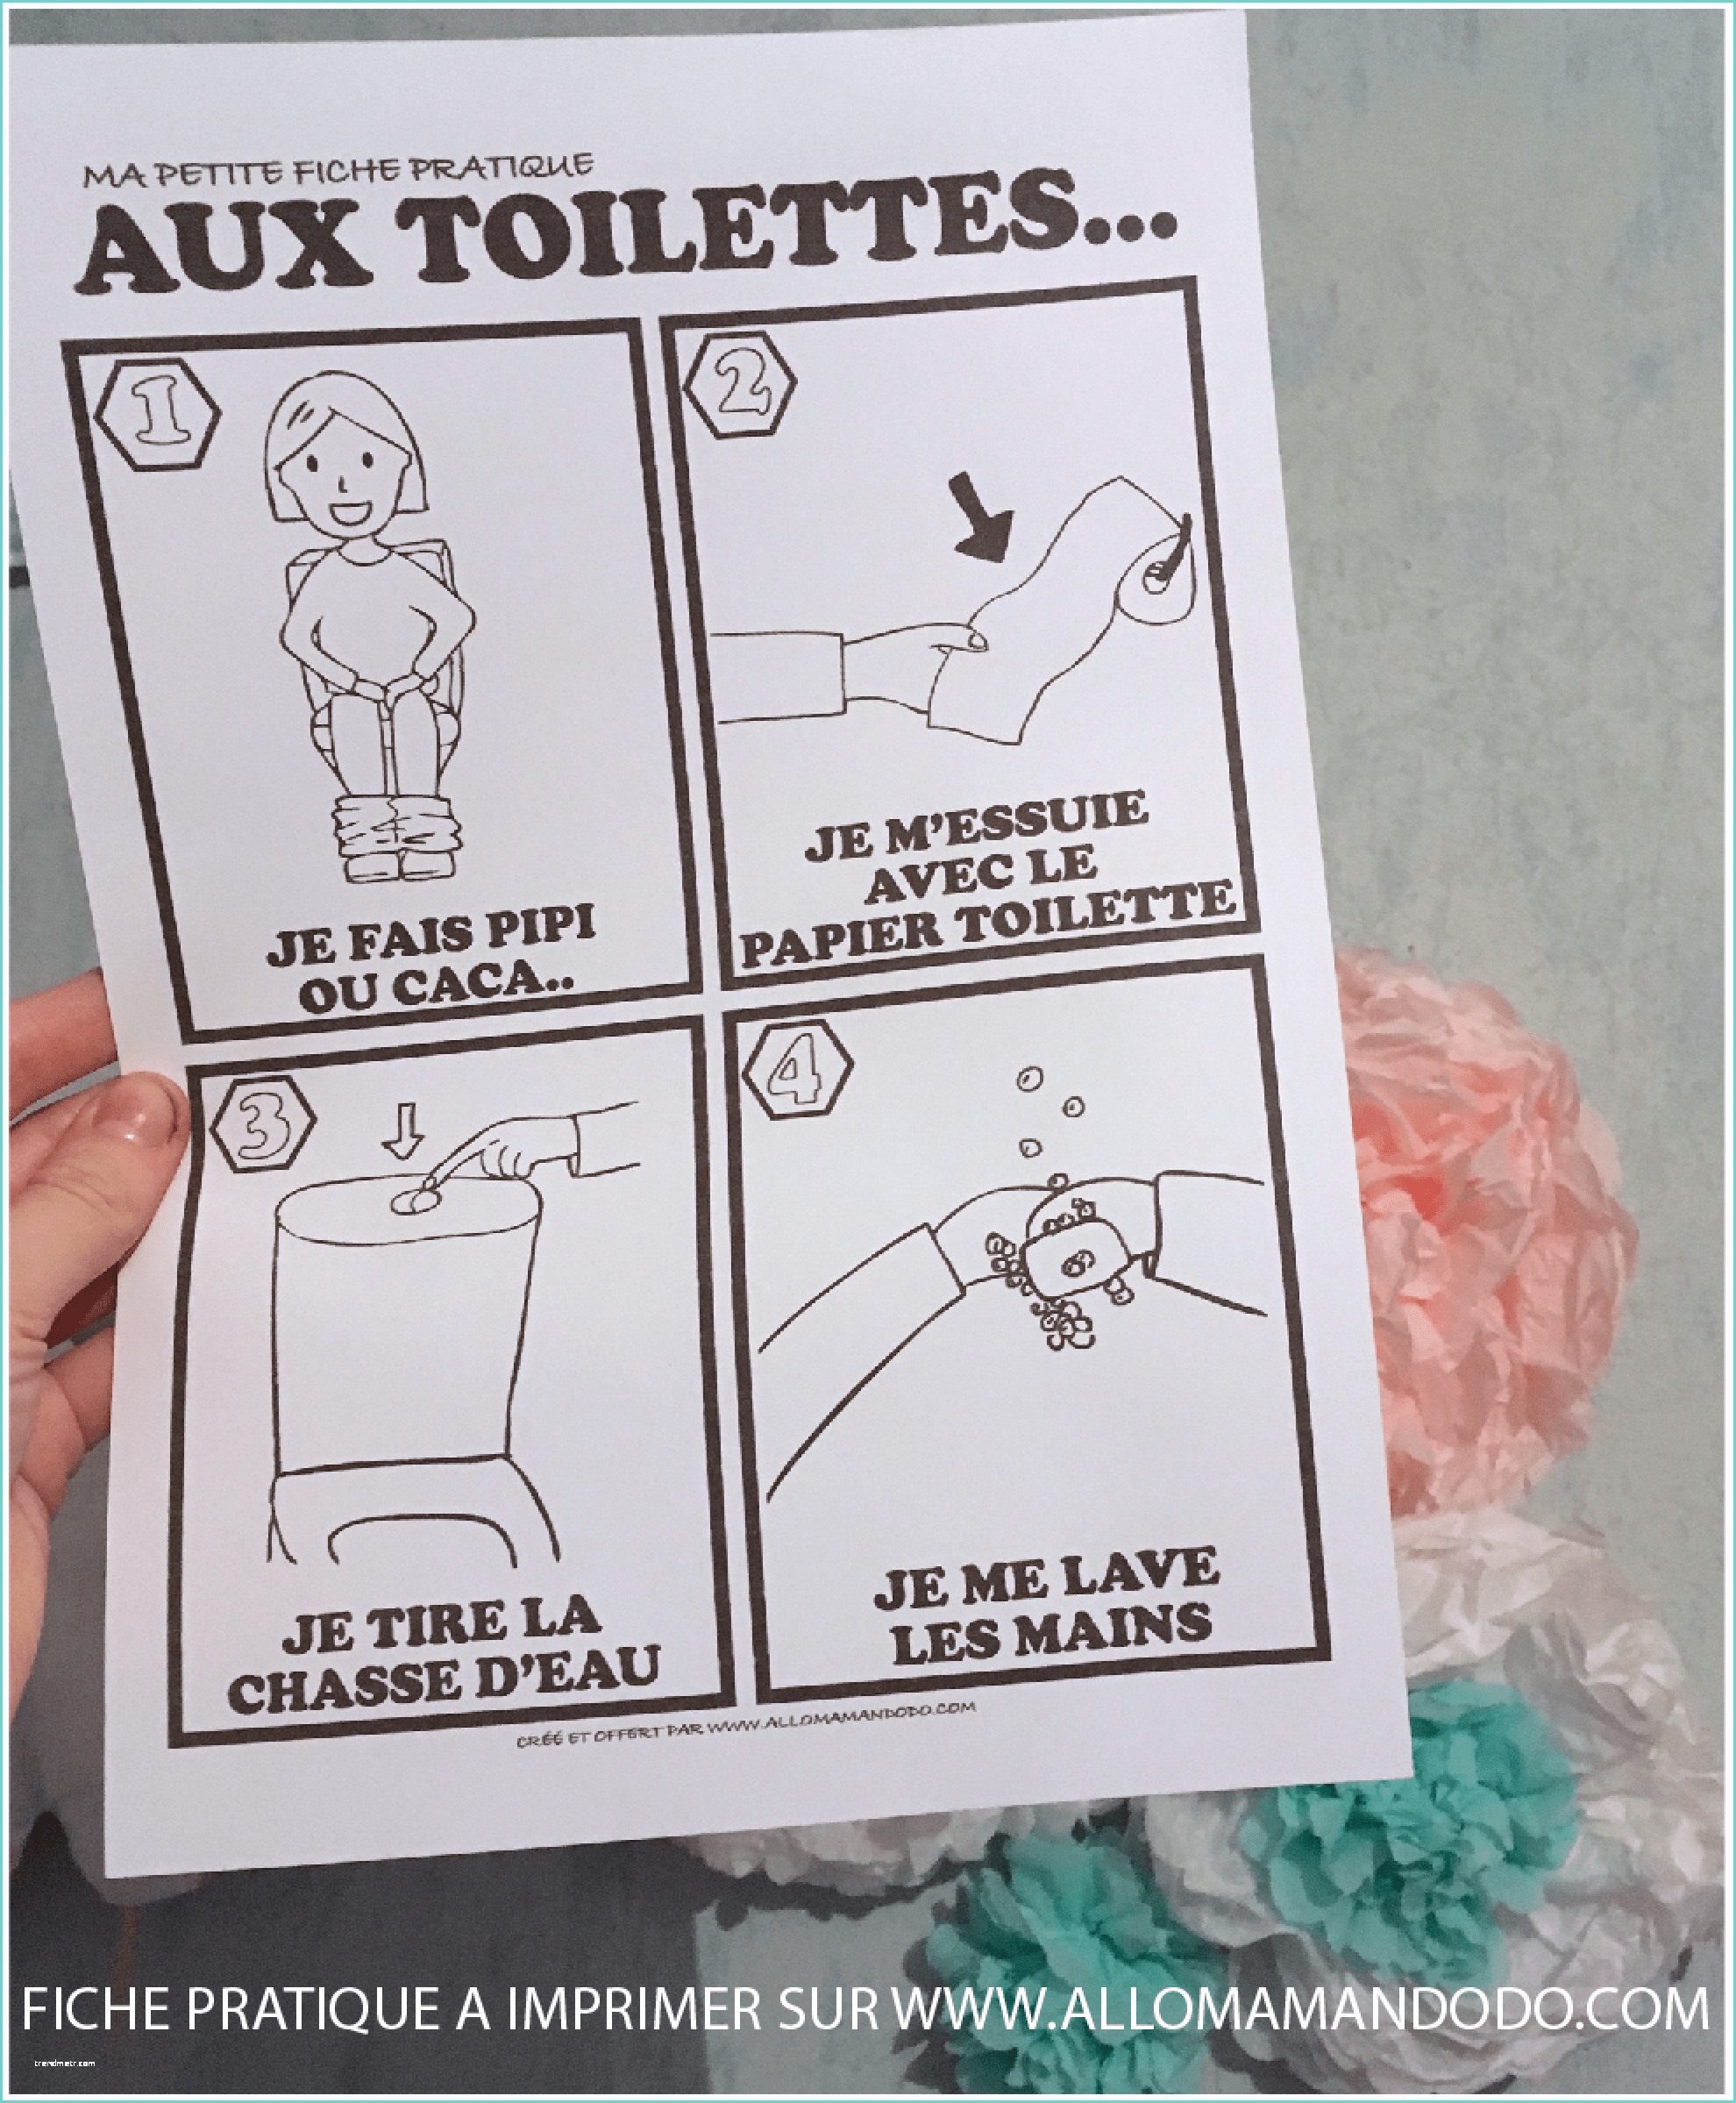 Lave Main Sur Chasse Deau Fiche Pratique "aux toilettes" à Imprimer